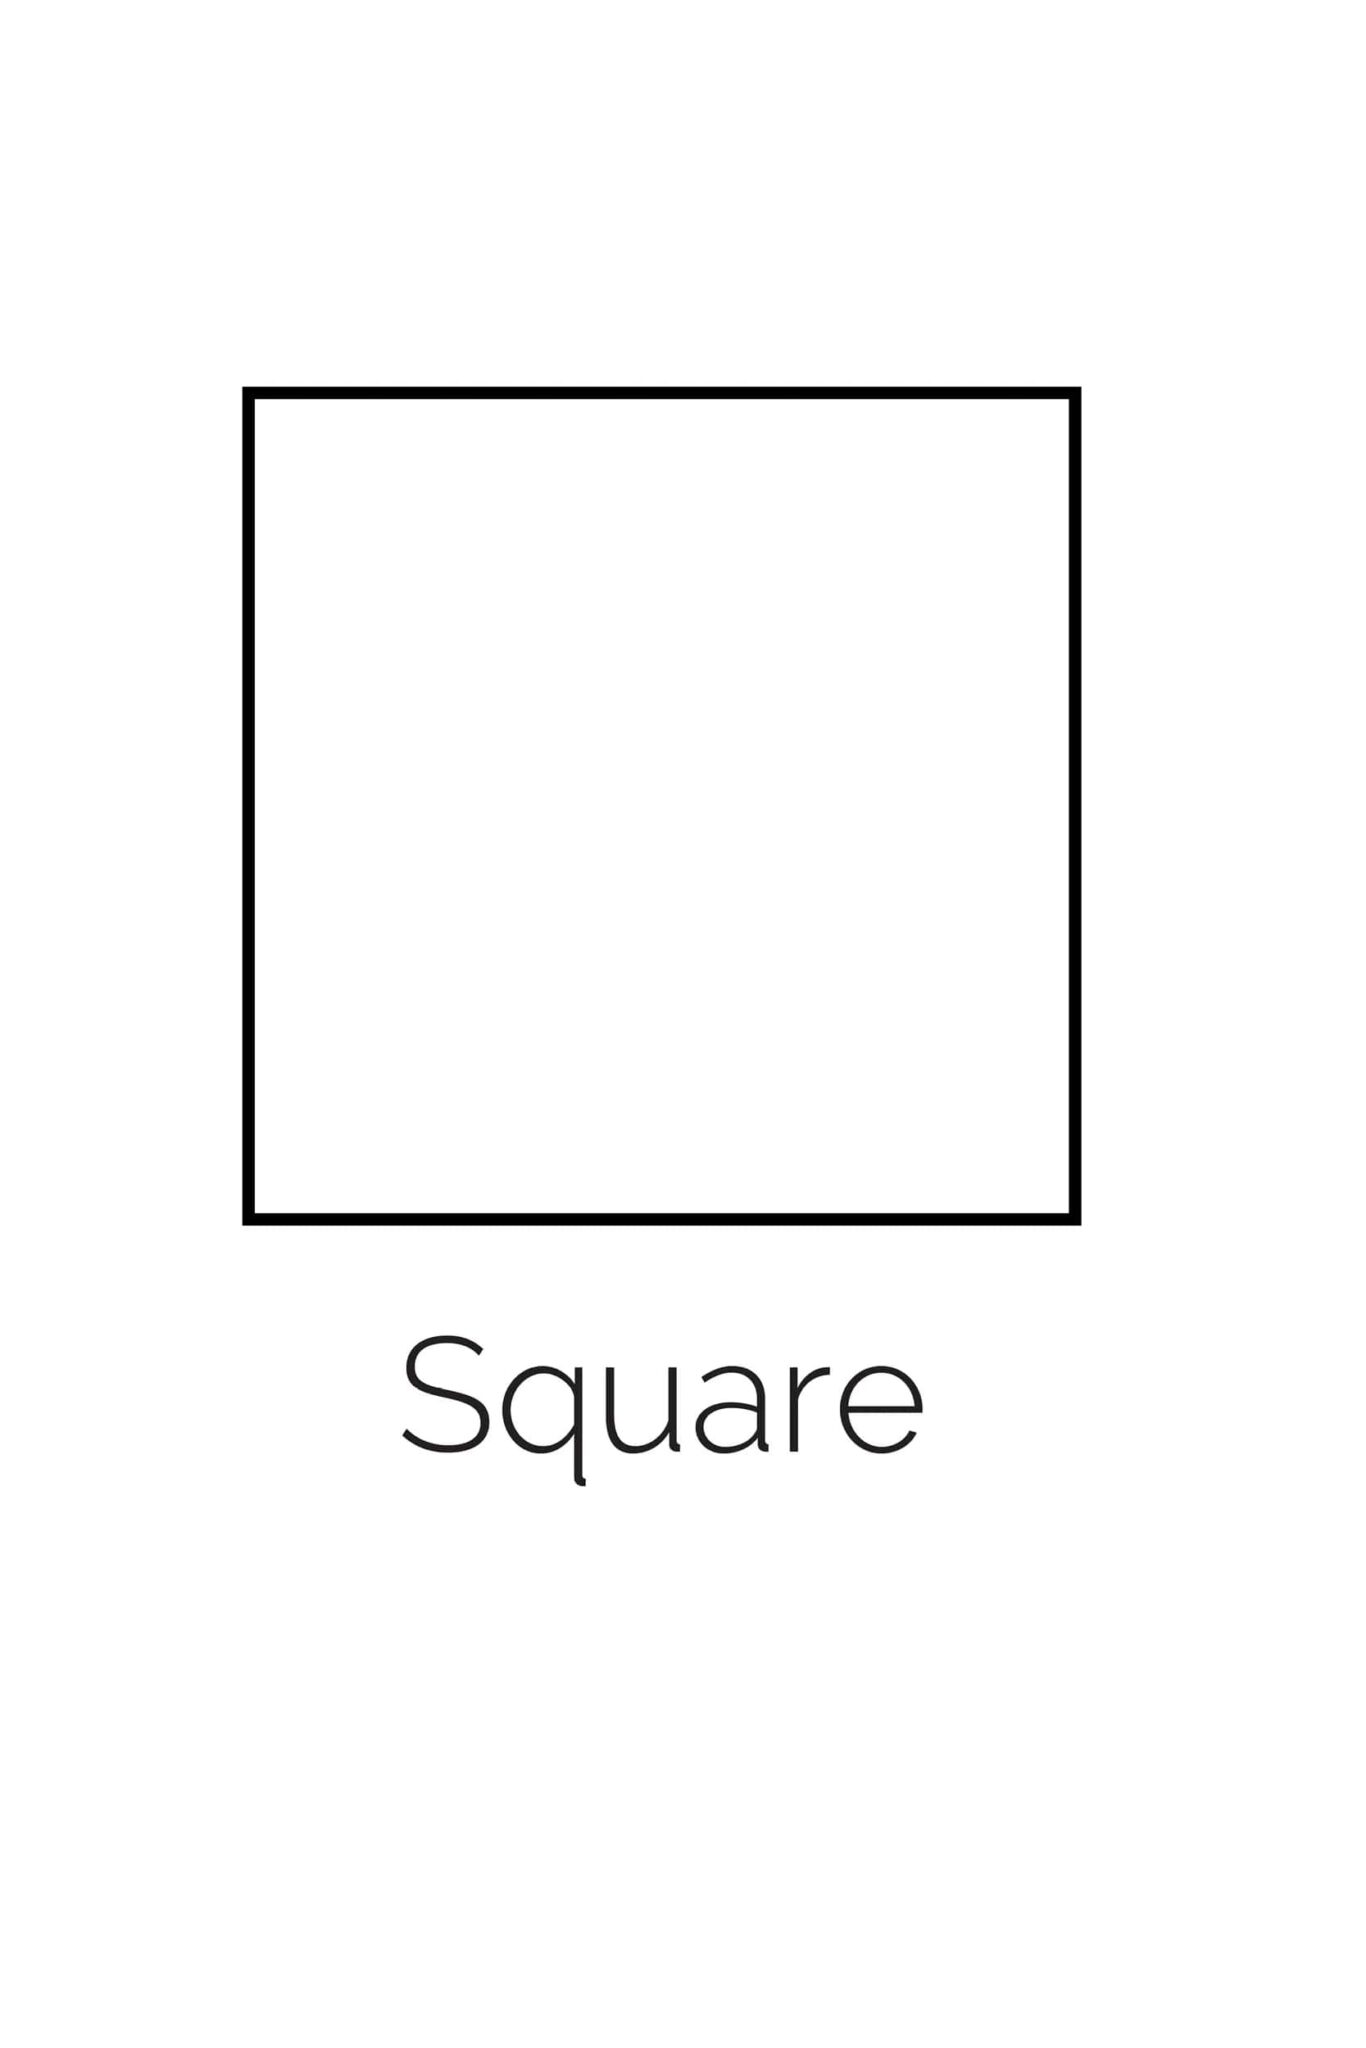 printable-square-templates-printable-jd